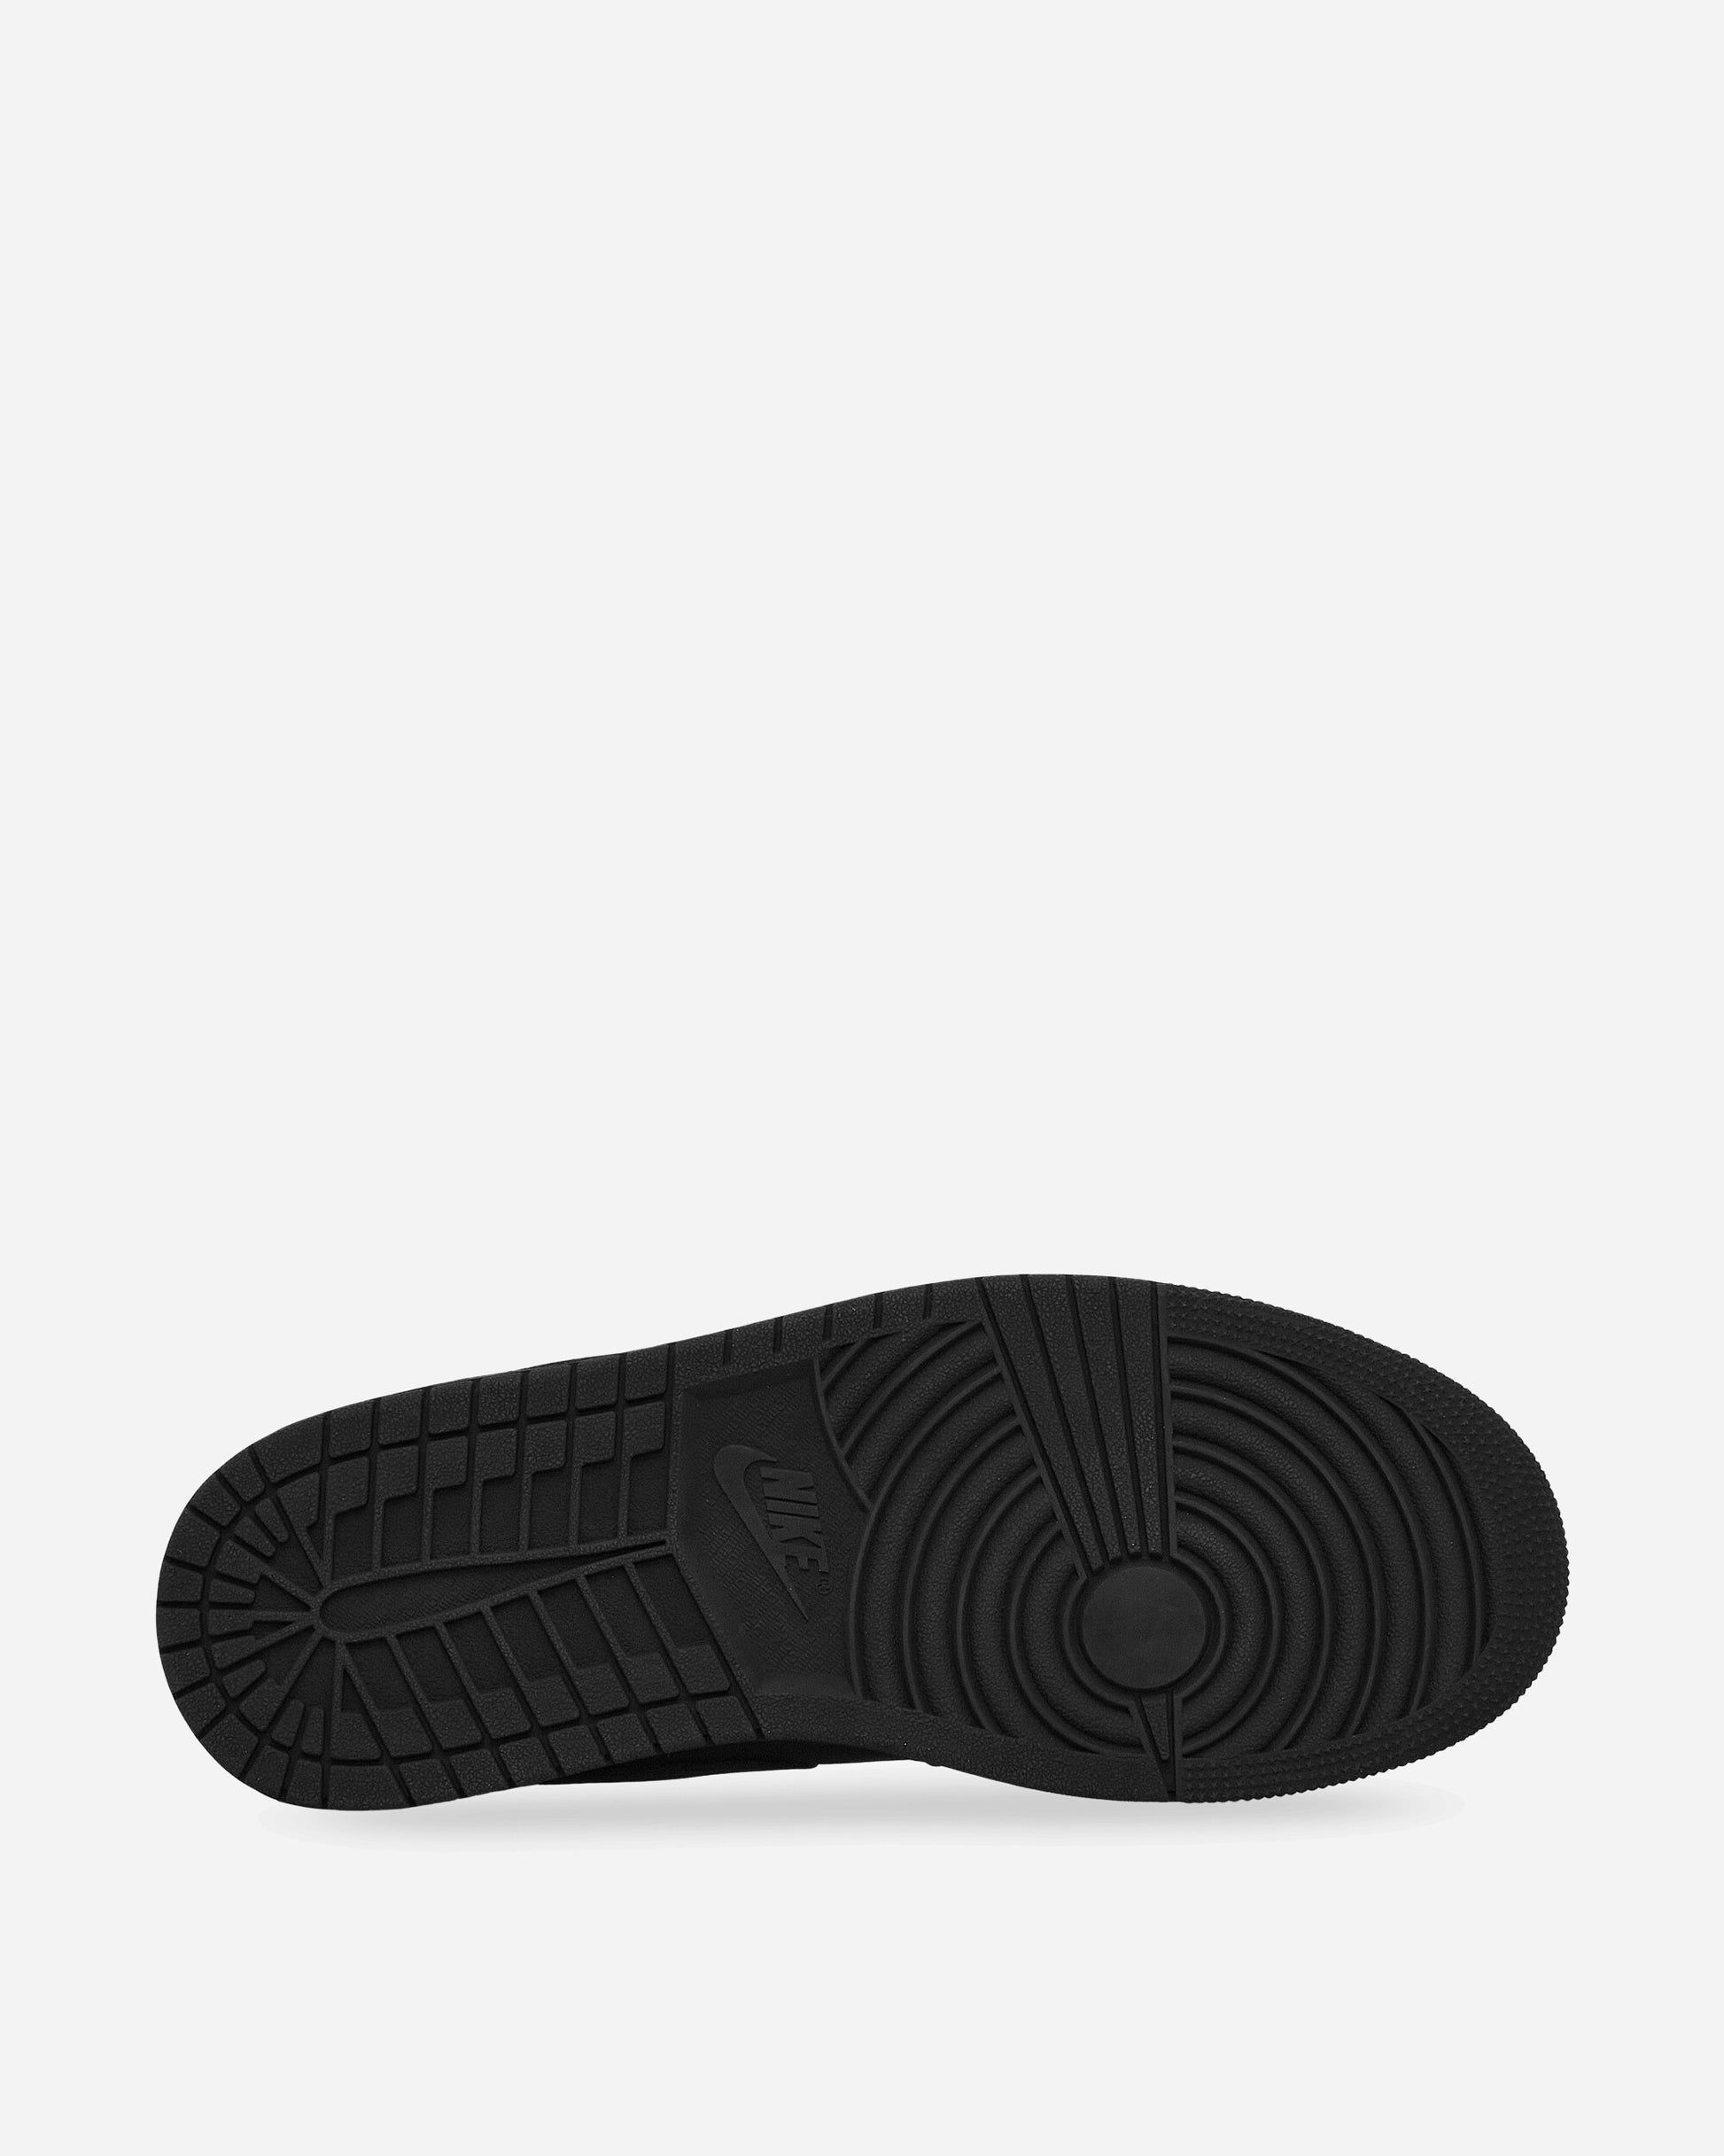 Nike Jordan Air Jordan 1 Low Black/Black Sneakers Low 553558W-093